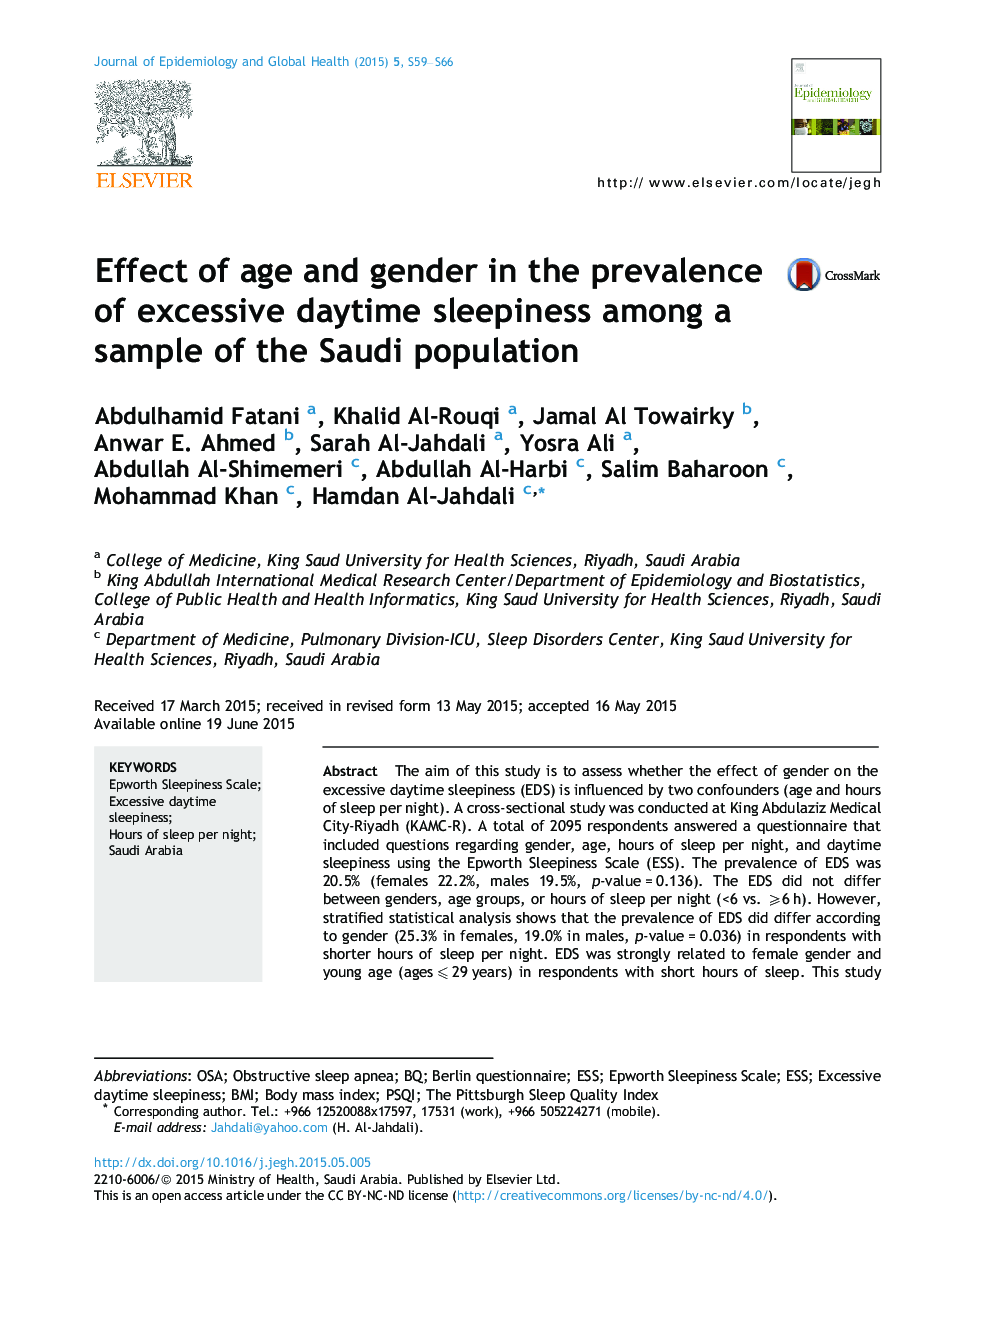 تأثیر سن و جنس در شیوع بیش از حد خواب در روز در میان نمونه ای از جمعیت عربستان سعودی 